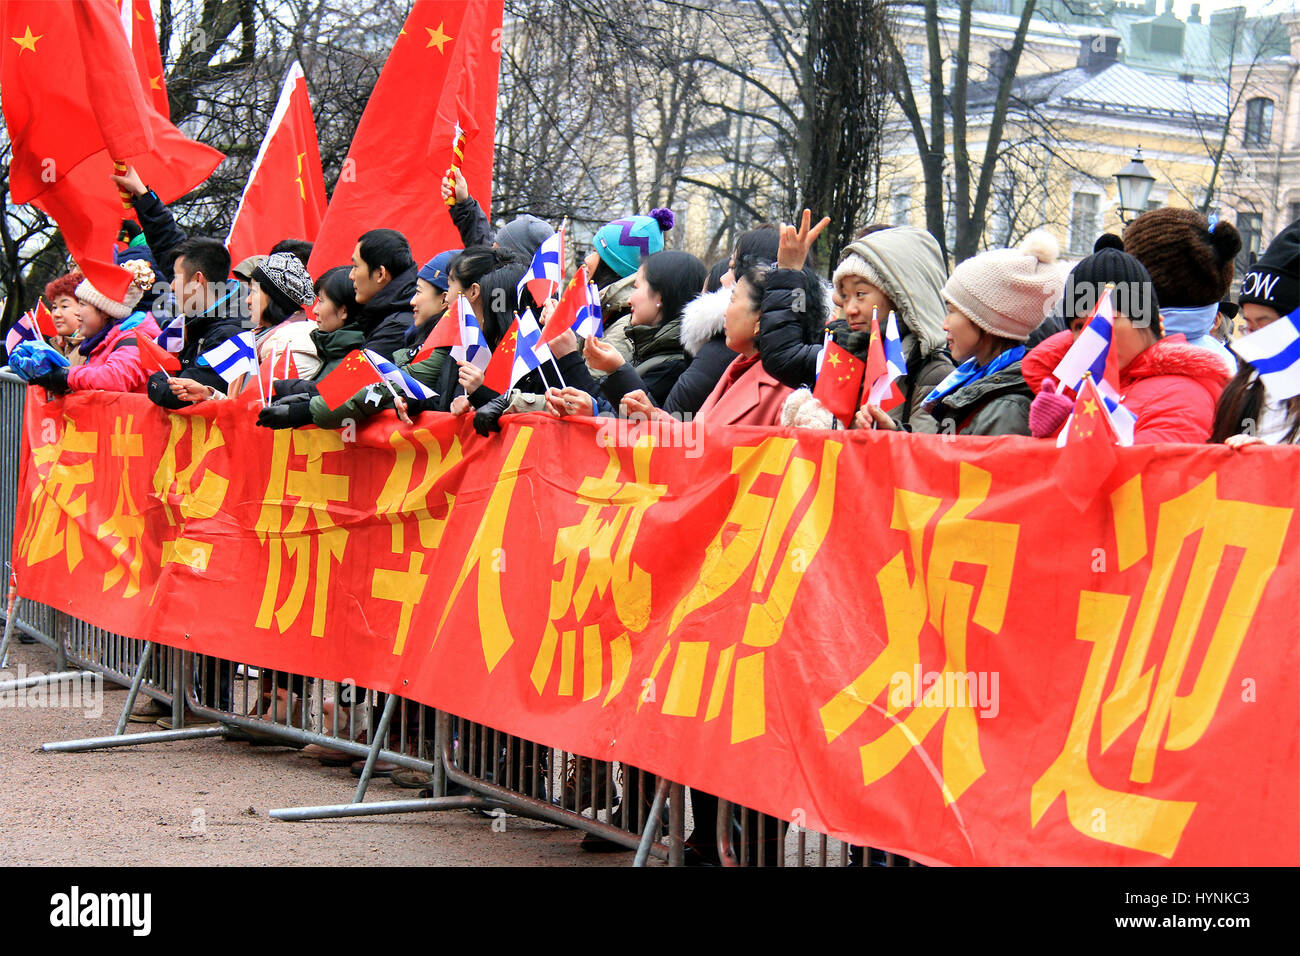 HELSINKI, Finlandia - 5 Aprile 2017: Il popolo cinese ondata finlandese e bandiere cinesi in attesa di vedere il Presidente Xi Jinping chi è in visita in Finlandia. Foto Stock